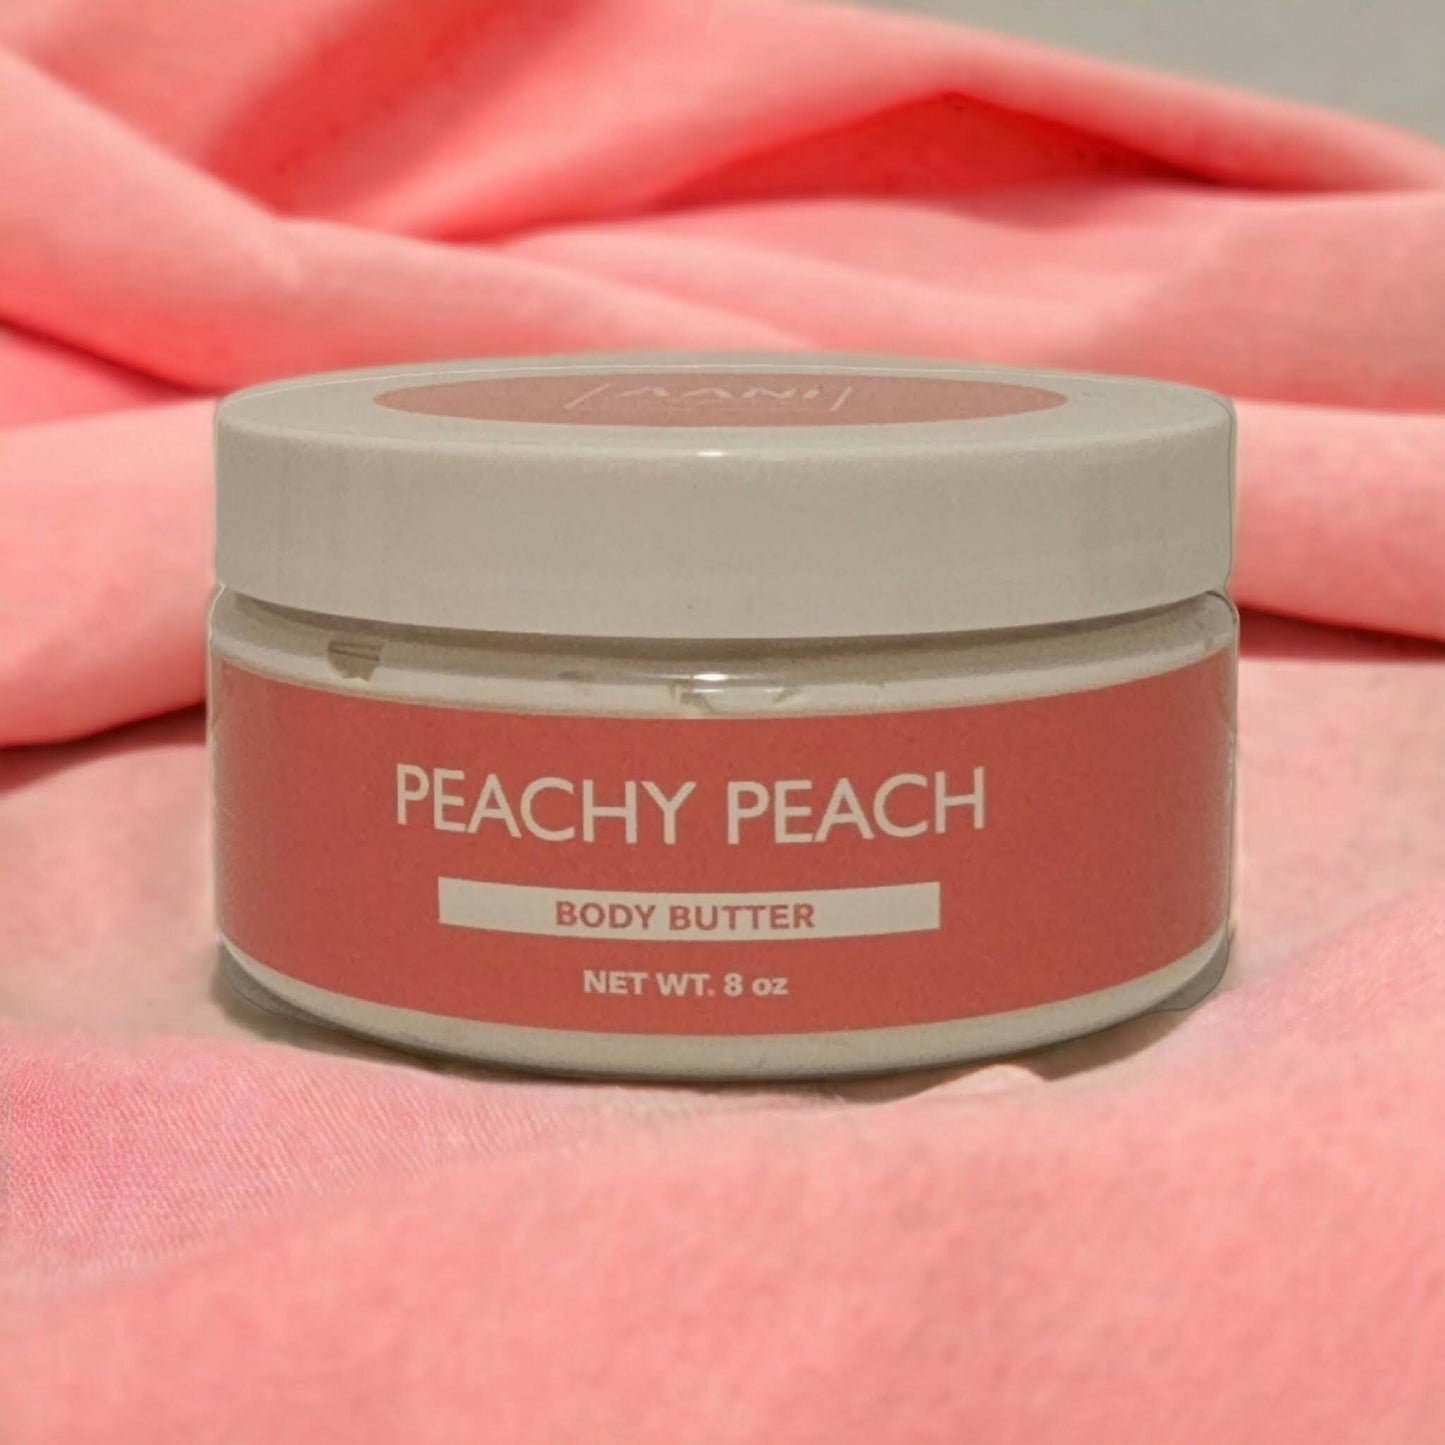 Peachy Peach Body Butter